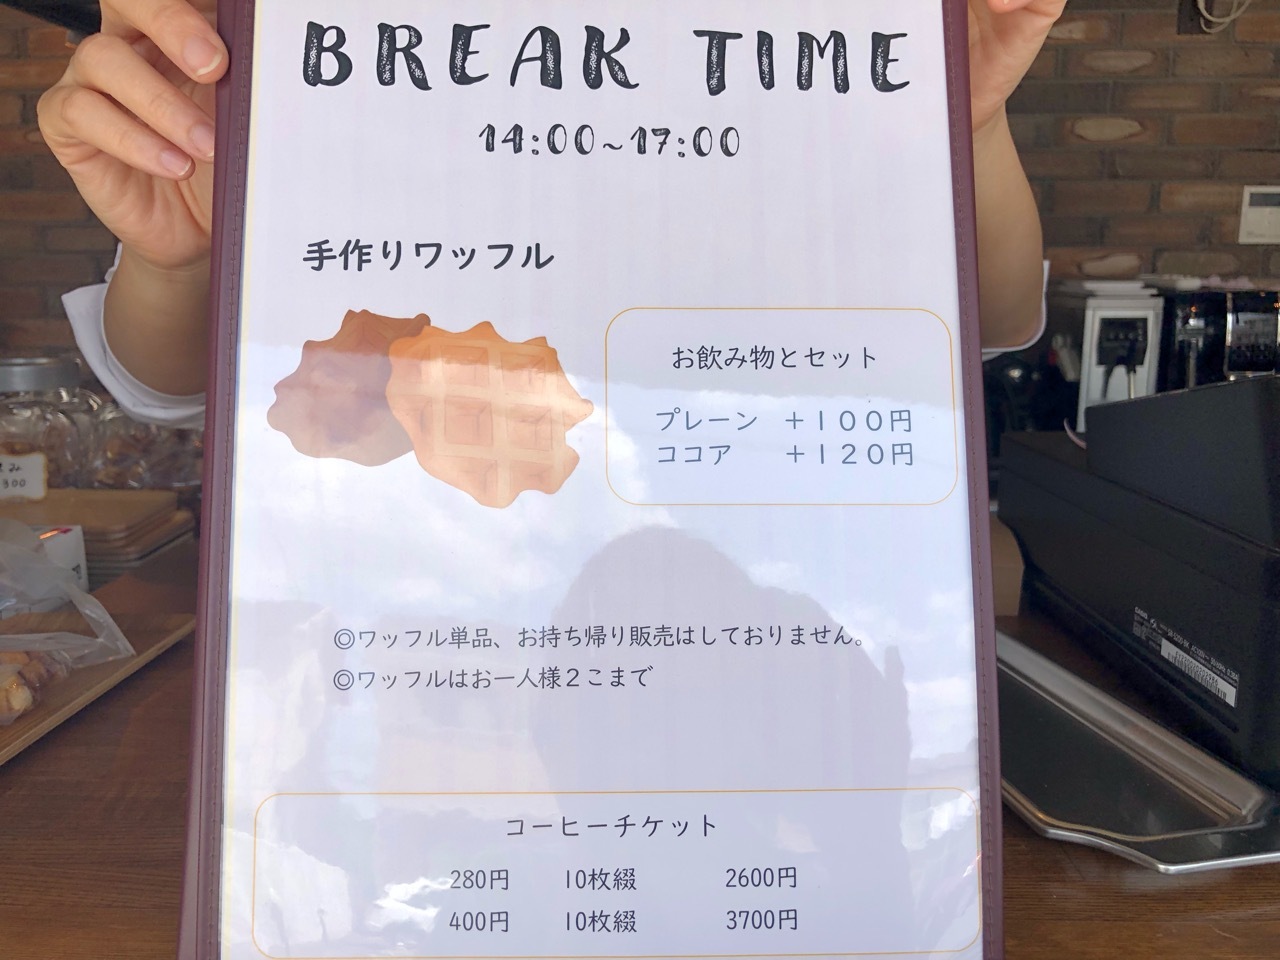 BREAK TIME